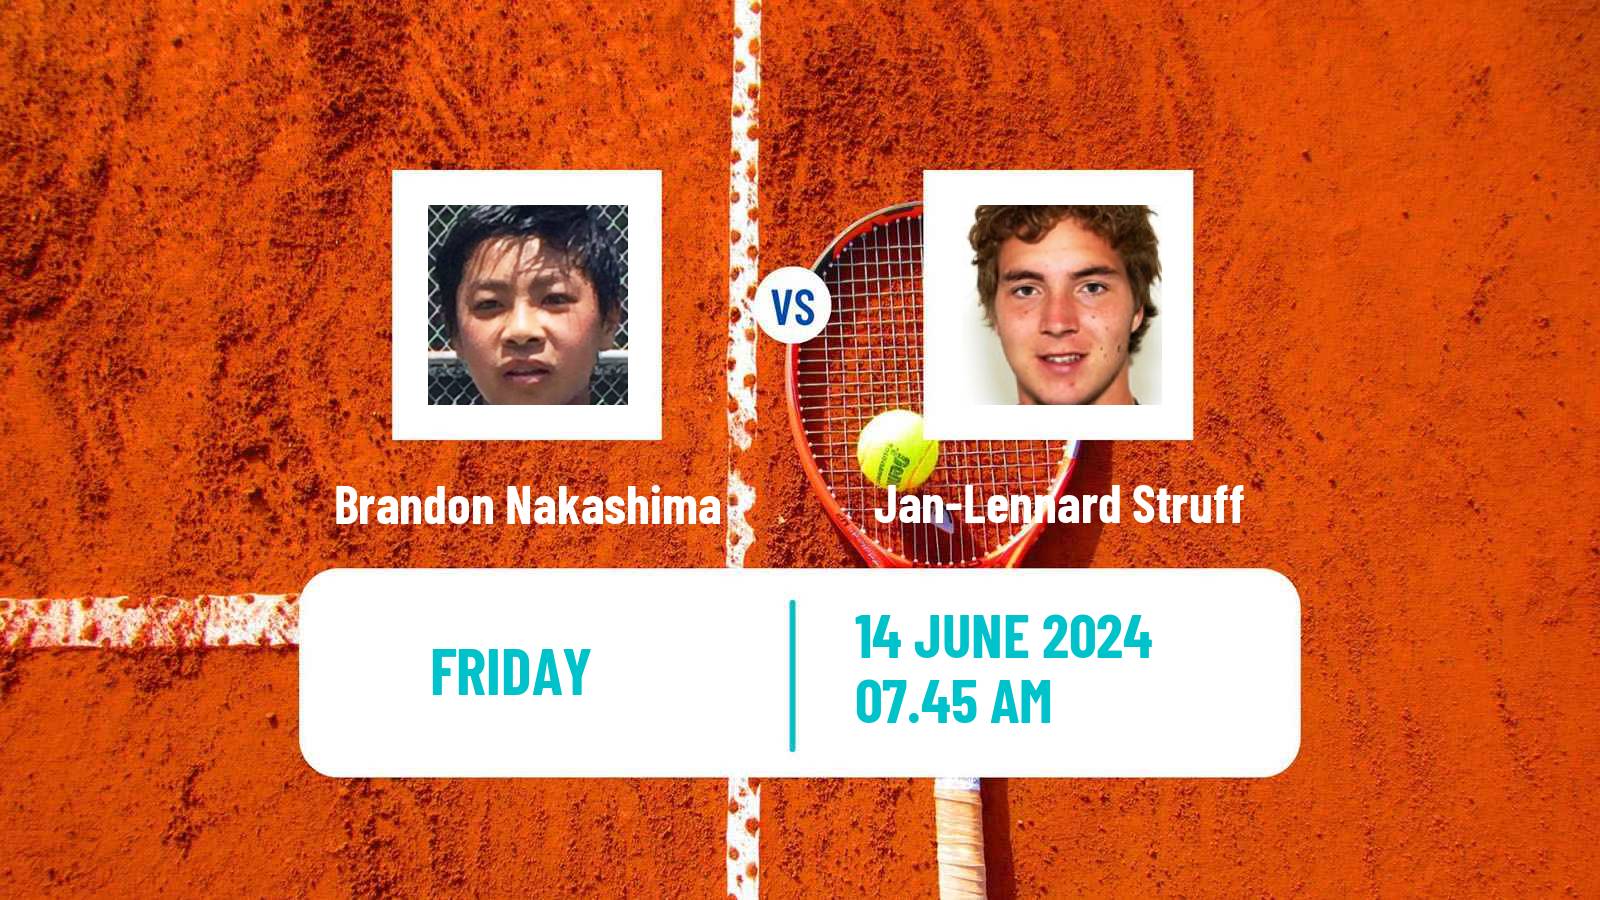 Tennis ATP Stuttgart Brandon Nakashima - Jan-Lennard Struff